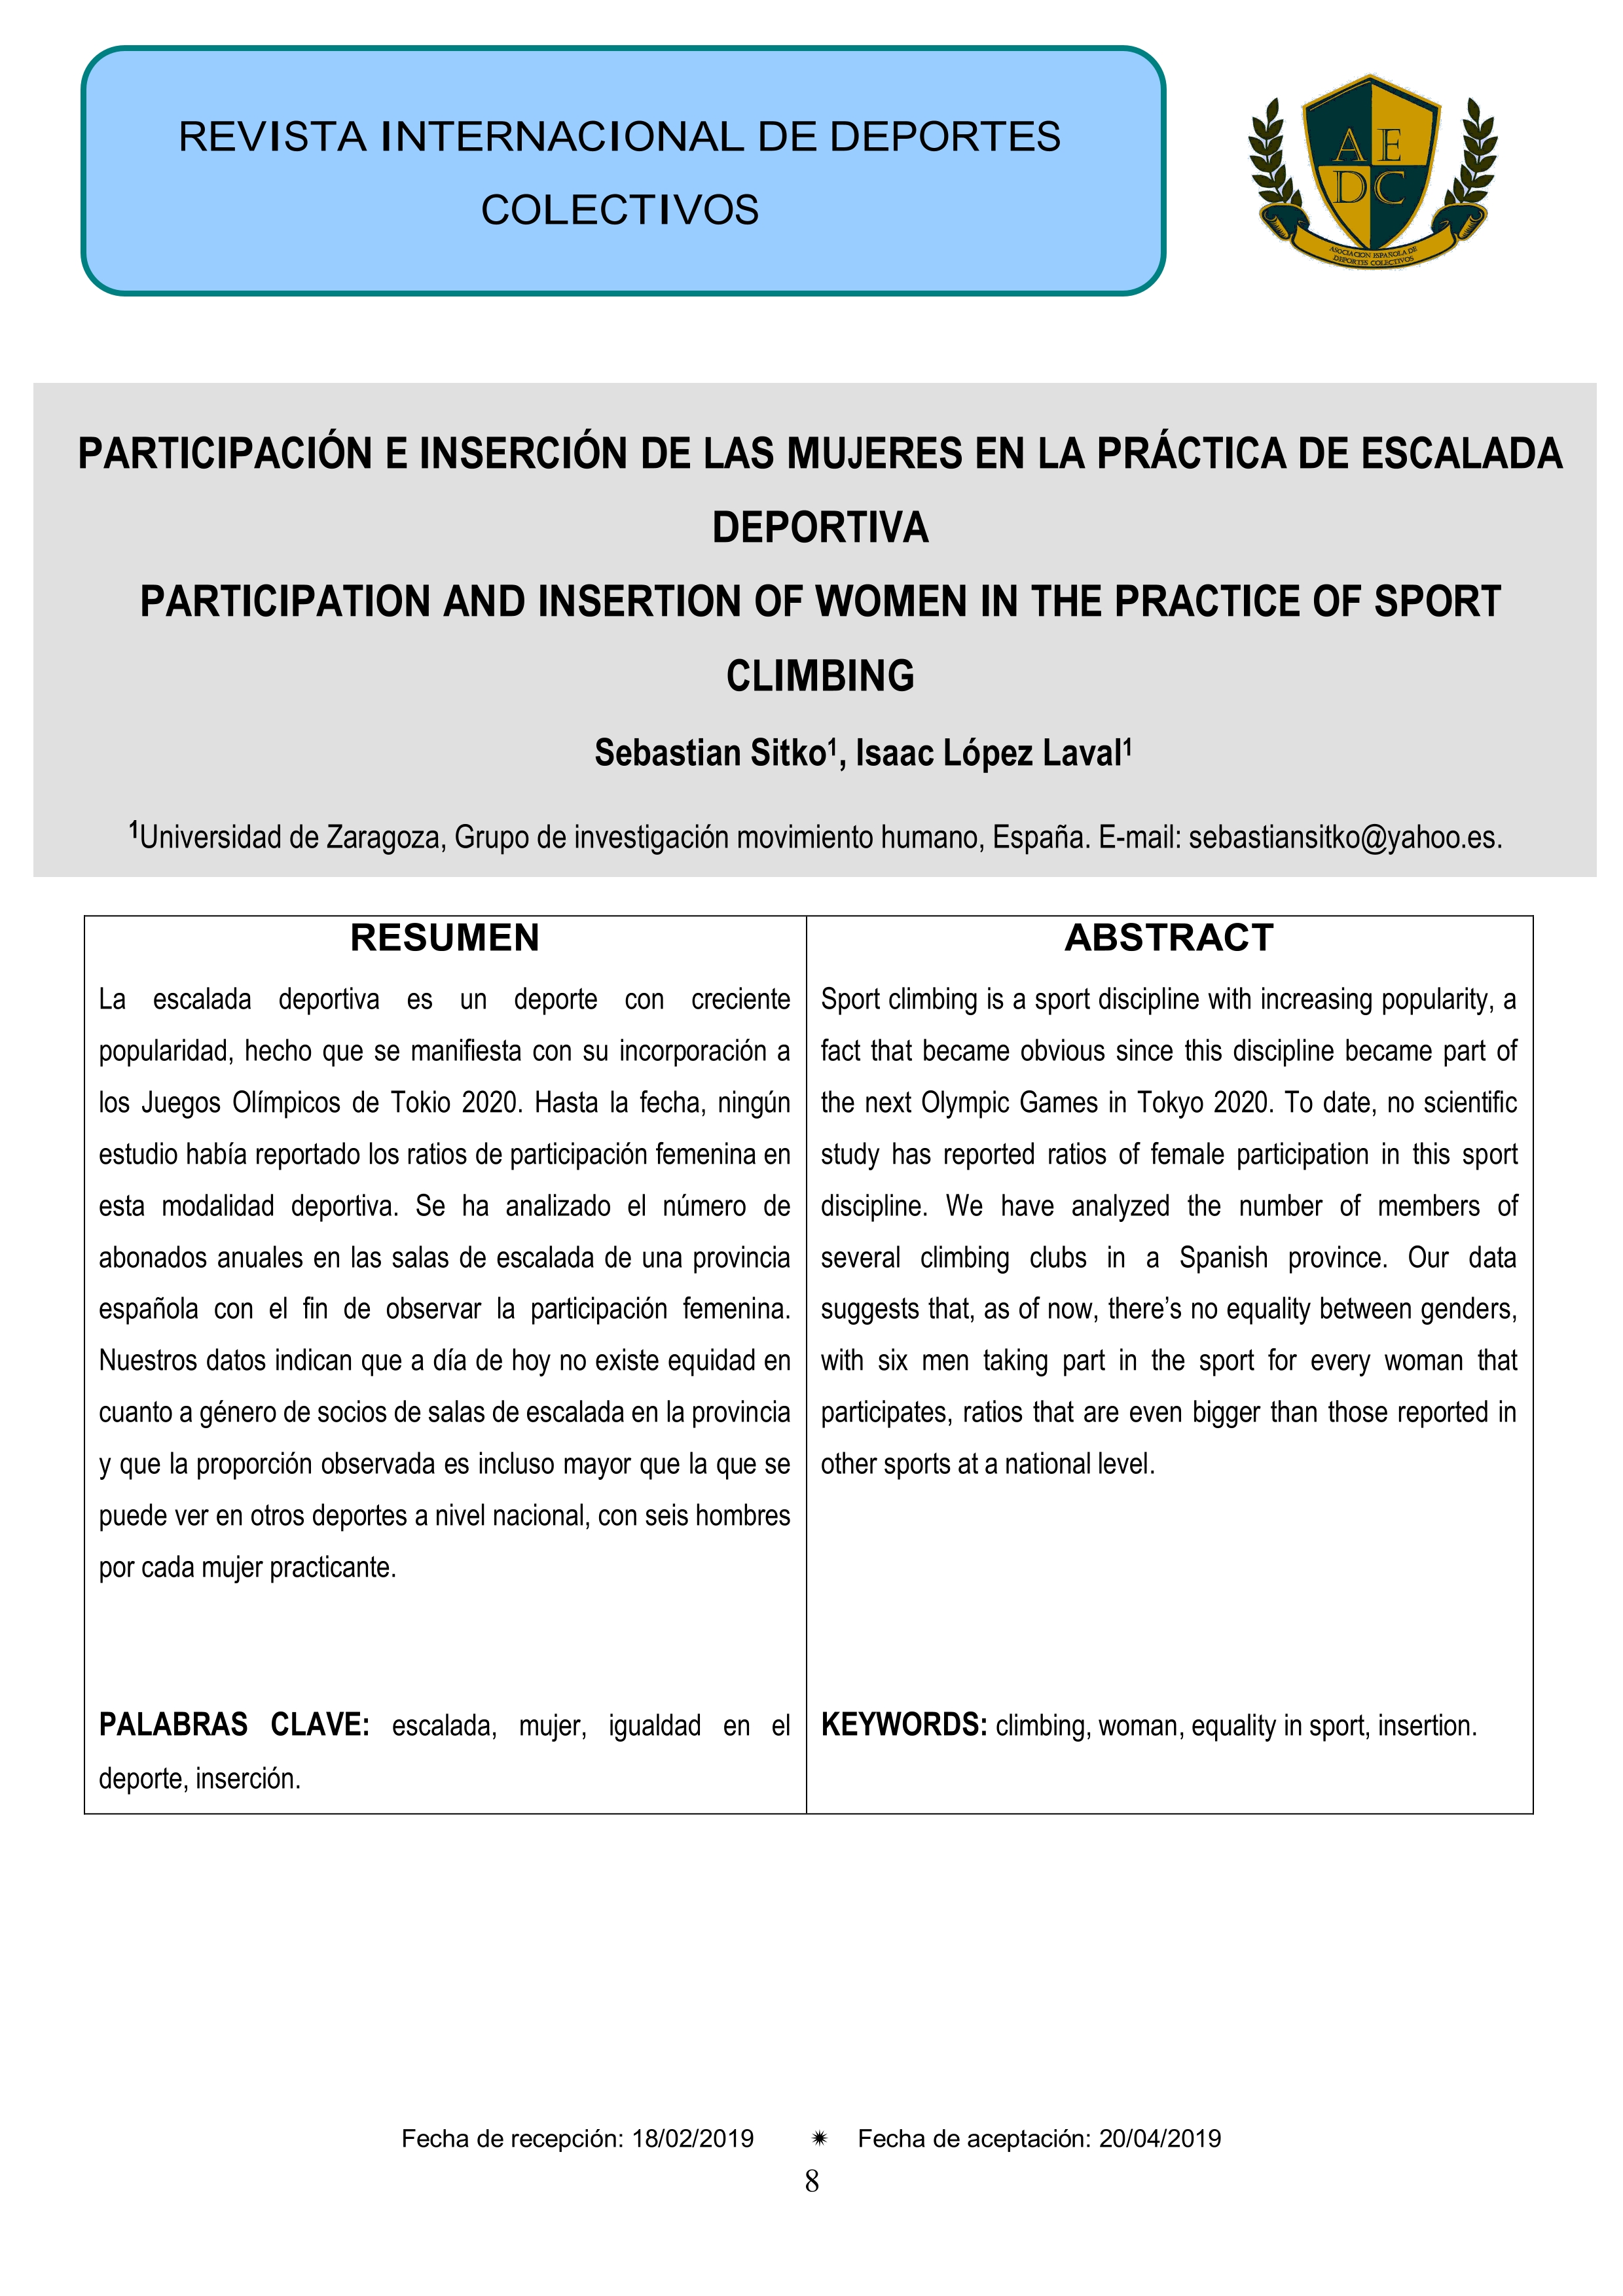 Participación e inserción de las mujeres en la práctica de escalada deportiva